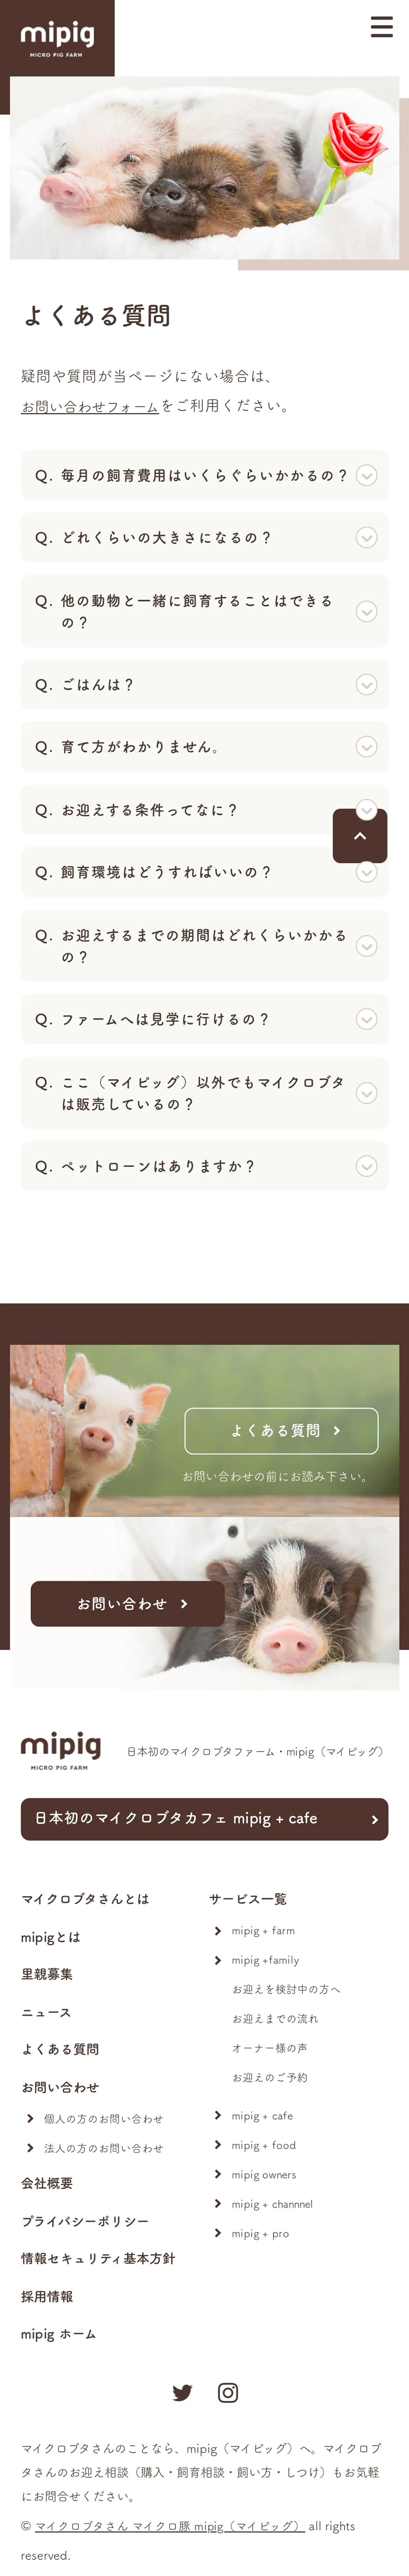 キャプチャ画面 会社名:株式会社SaLaDaプロジェクト名:mipig　MICRO PIG FARM 画面名:質問・Q&A デバイス名:SPカテゴリ:動物・ペットタグ:質問・Q&A,SP